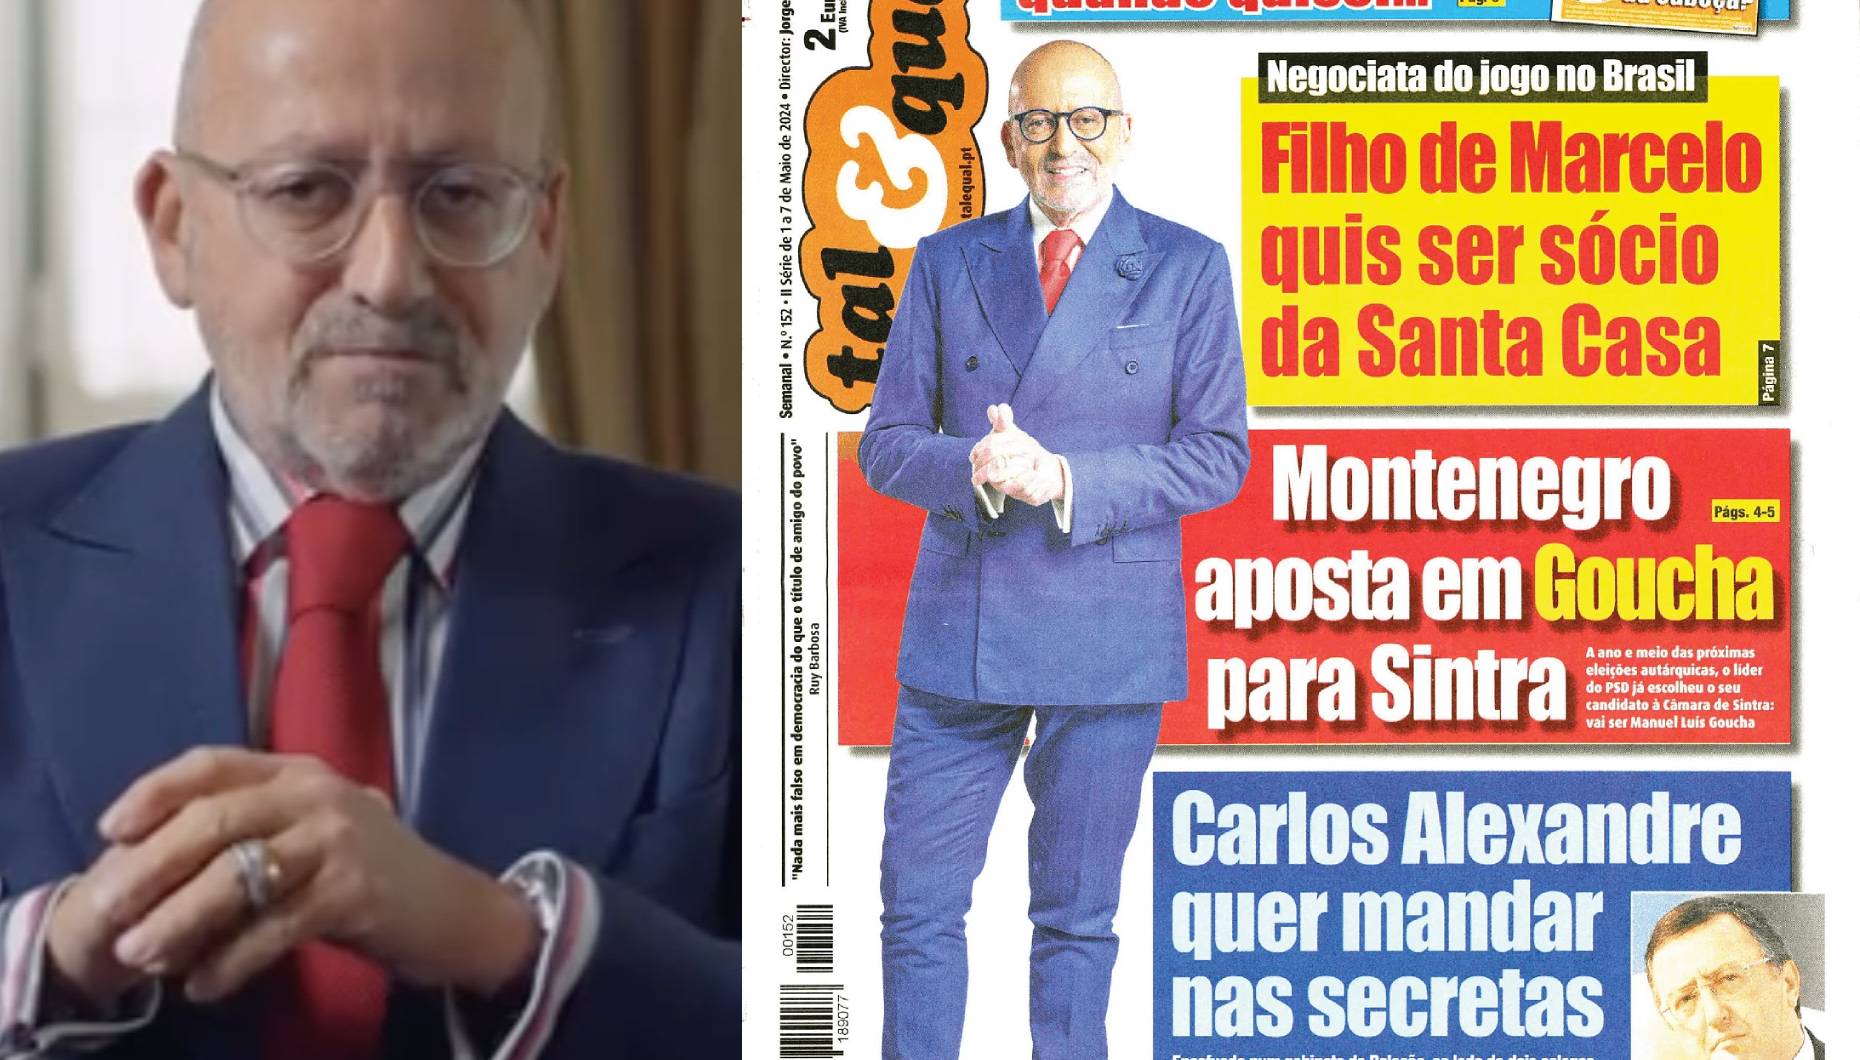 A caminho da política? Manuel Luís Goucha apontado como candidato à Câmara de Sintra